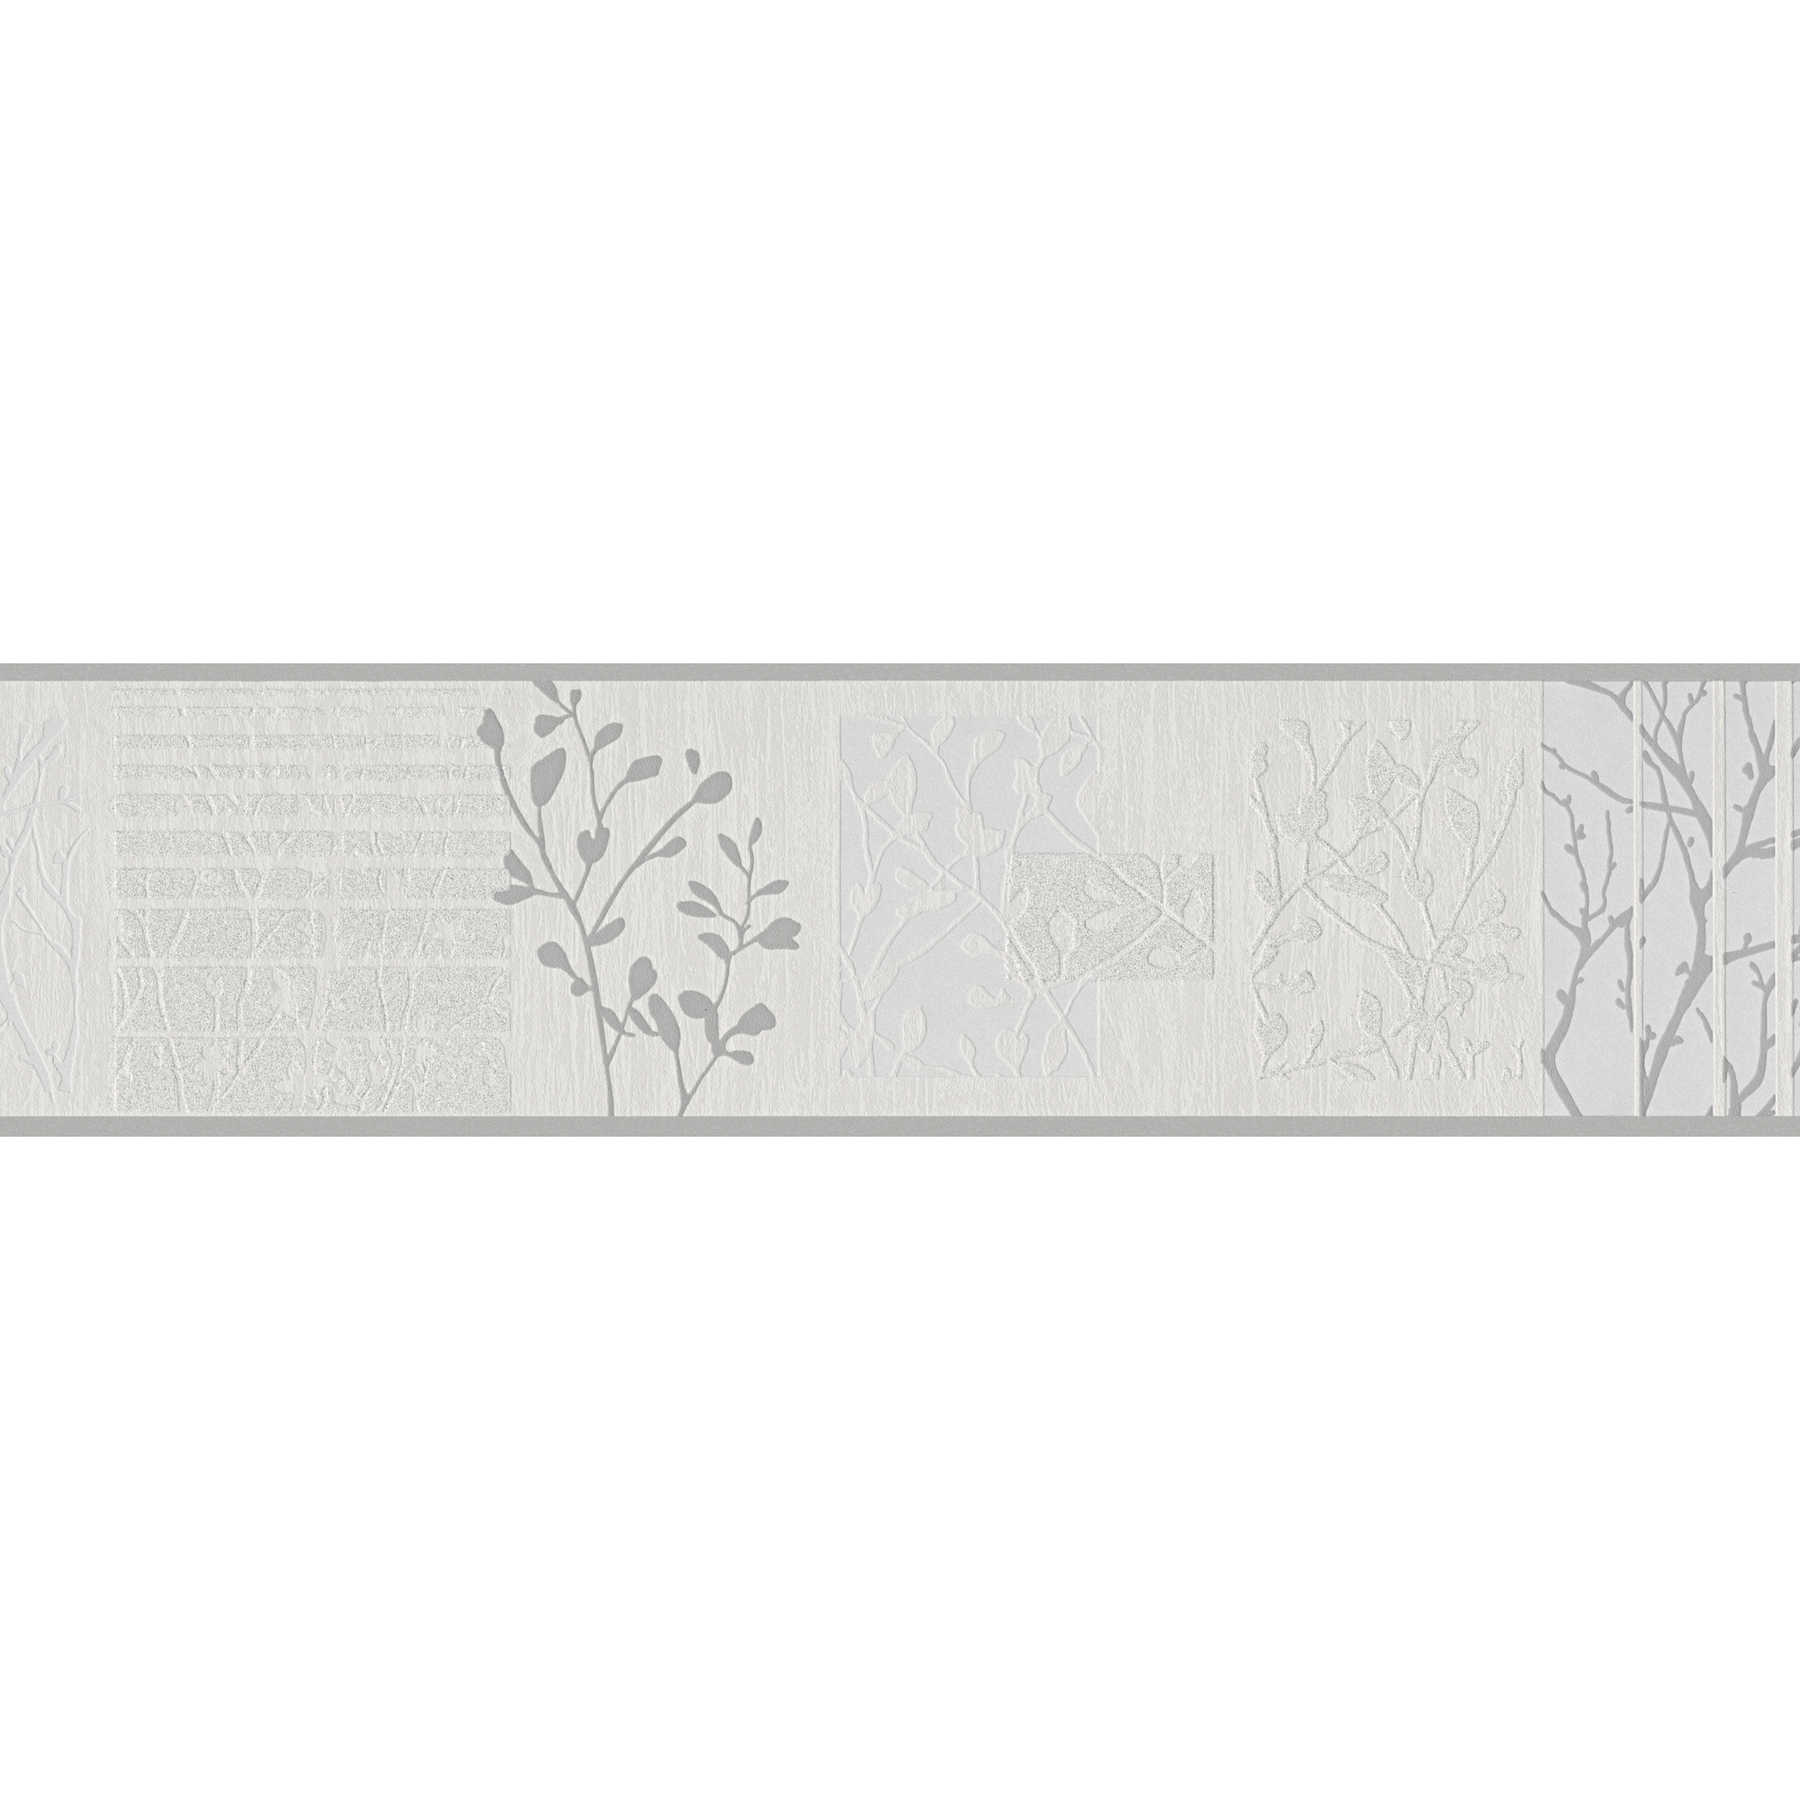         Borte mit Blätter-Muster, strukturiert, Metallic-Akzente – Grau, Silber, Beige
    